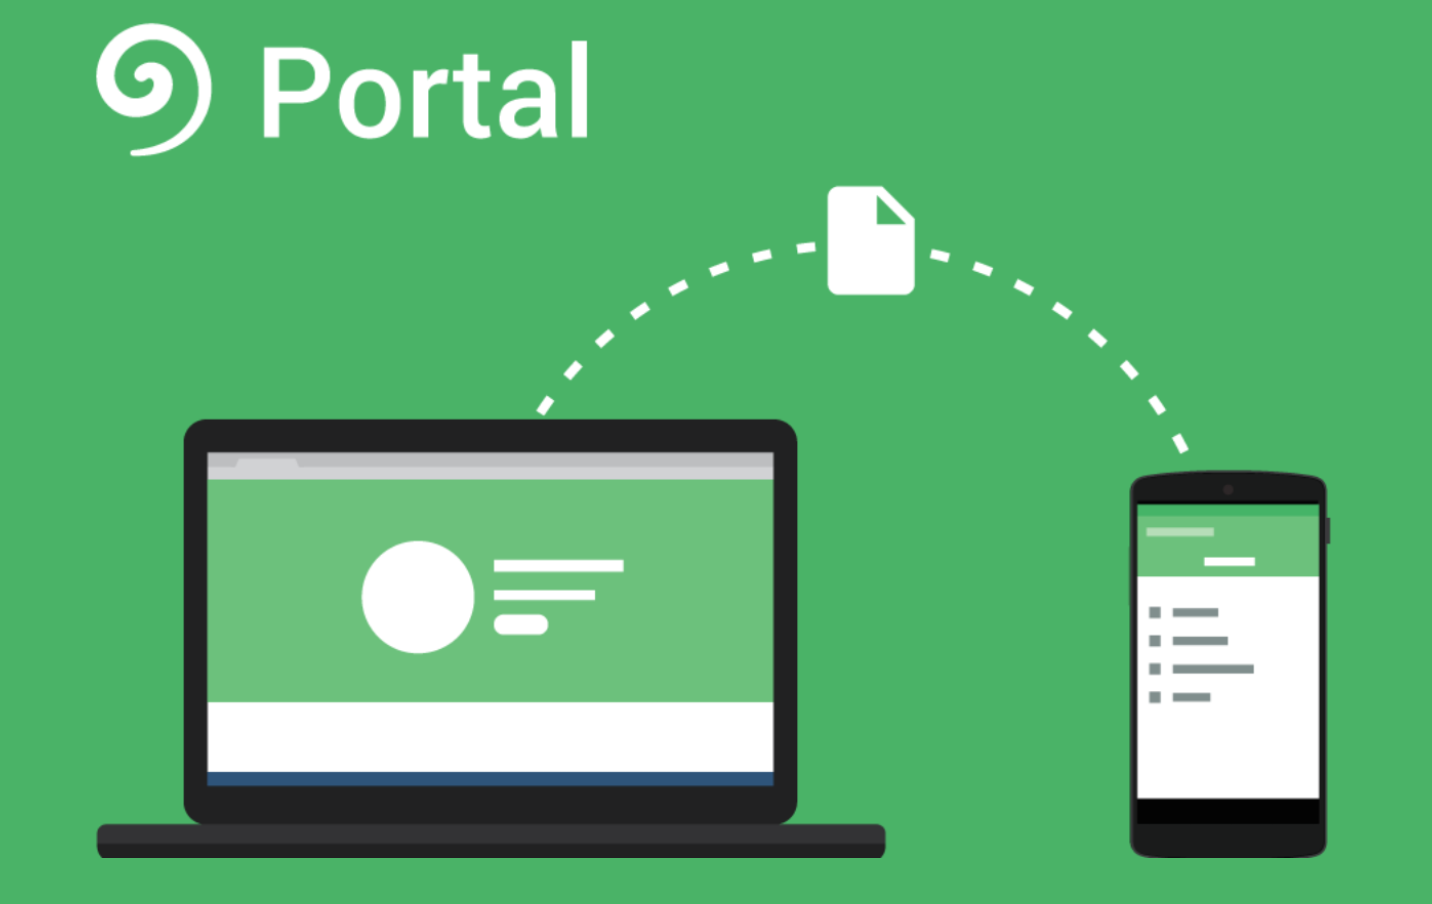 Portal от Pushbullet позволяет передавать большие файлы между устройствами